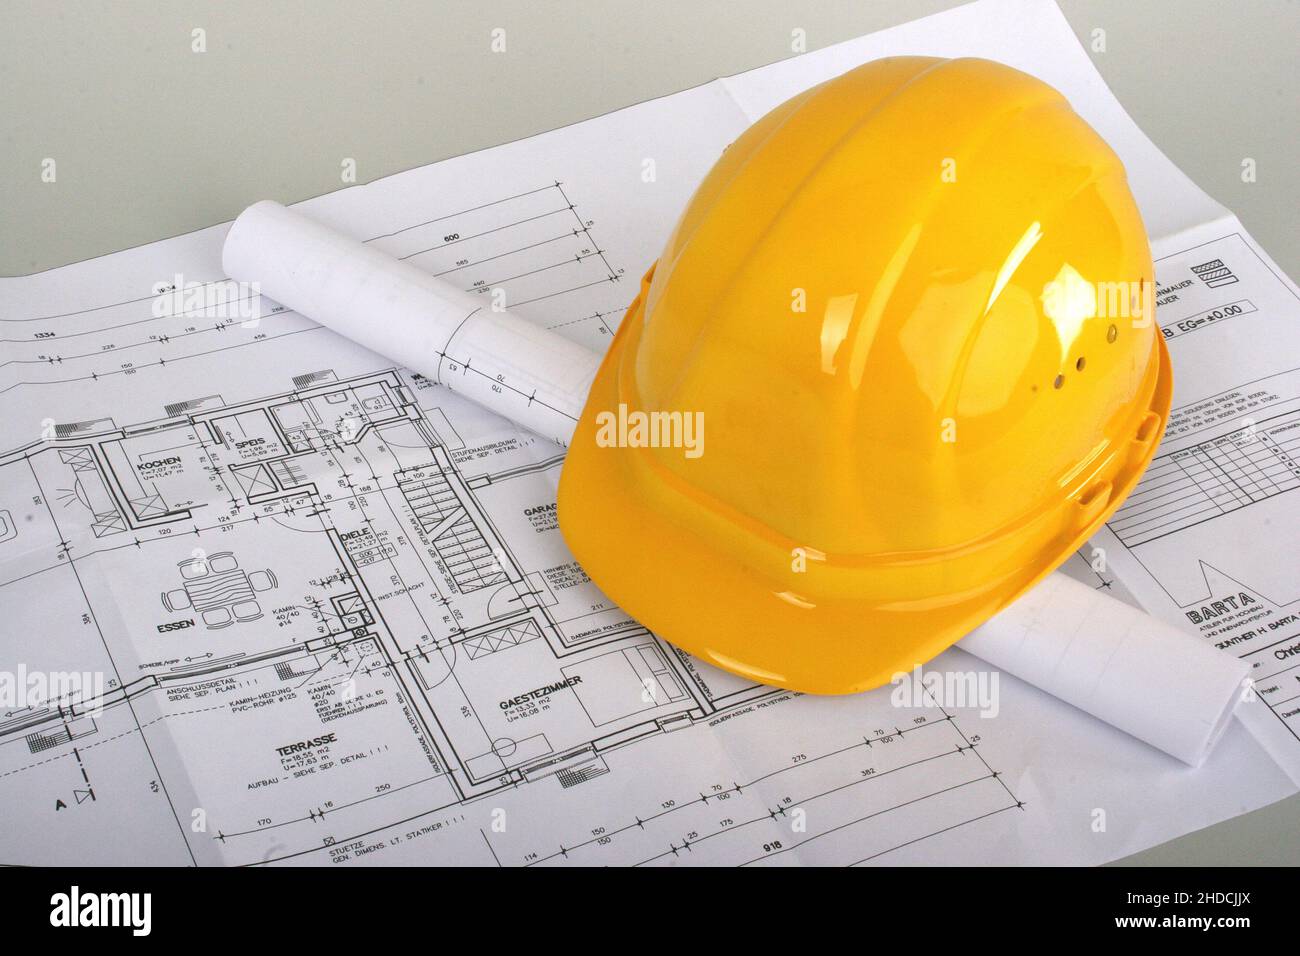 Bauplan und Helm, Symbolbild für Architekt, Architekten, Stock Photo